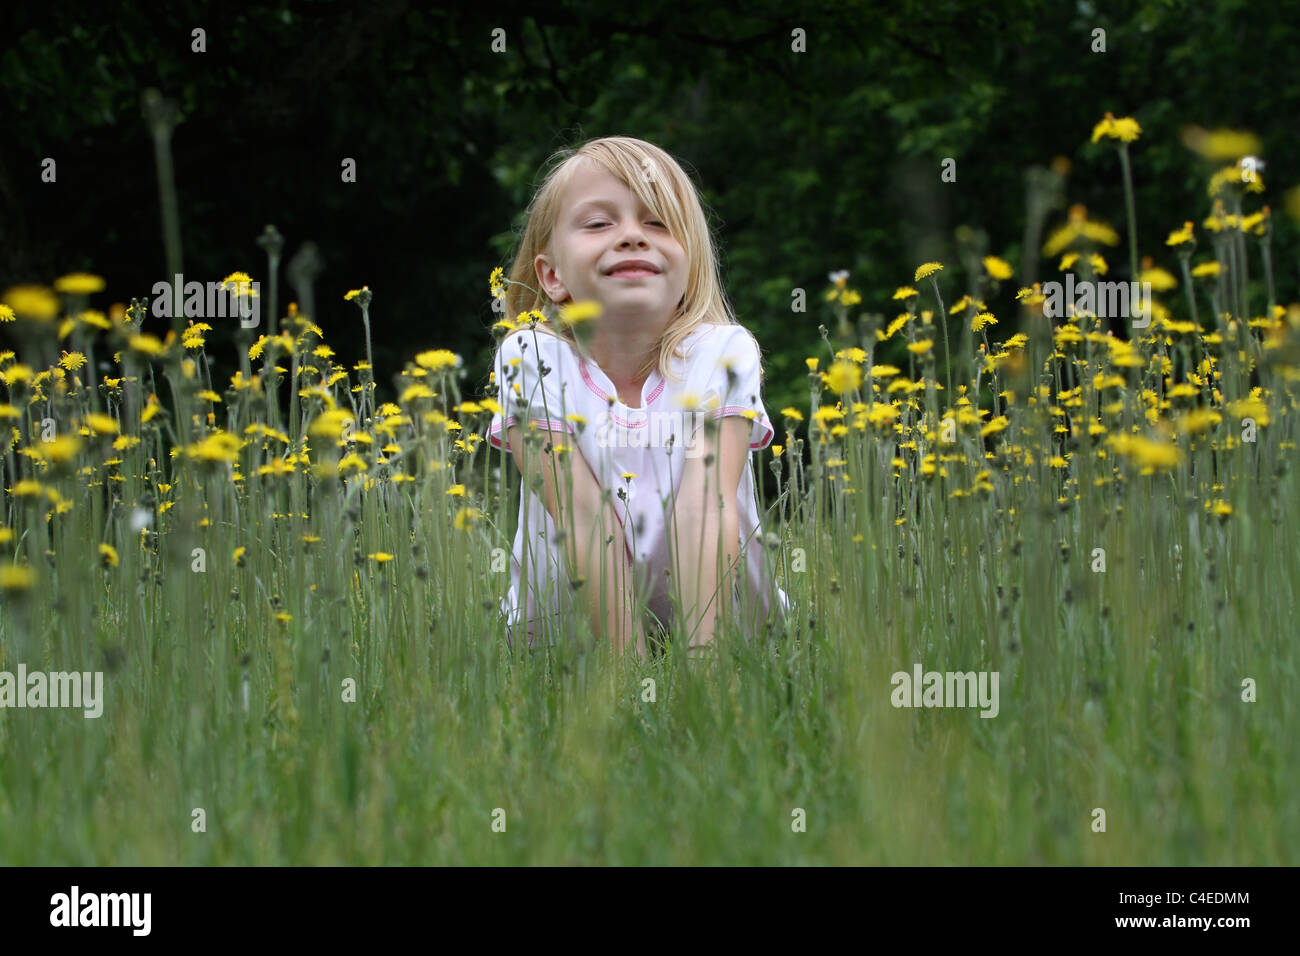 Une jeune fille joue dans un champ plein de fleurs. Banque D'Images